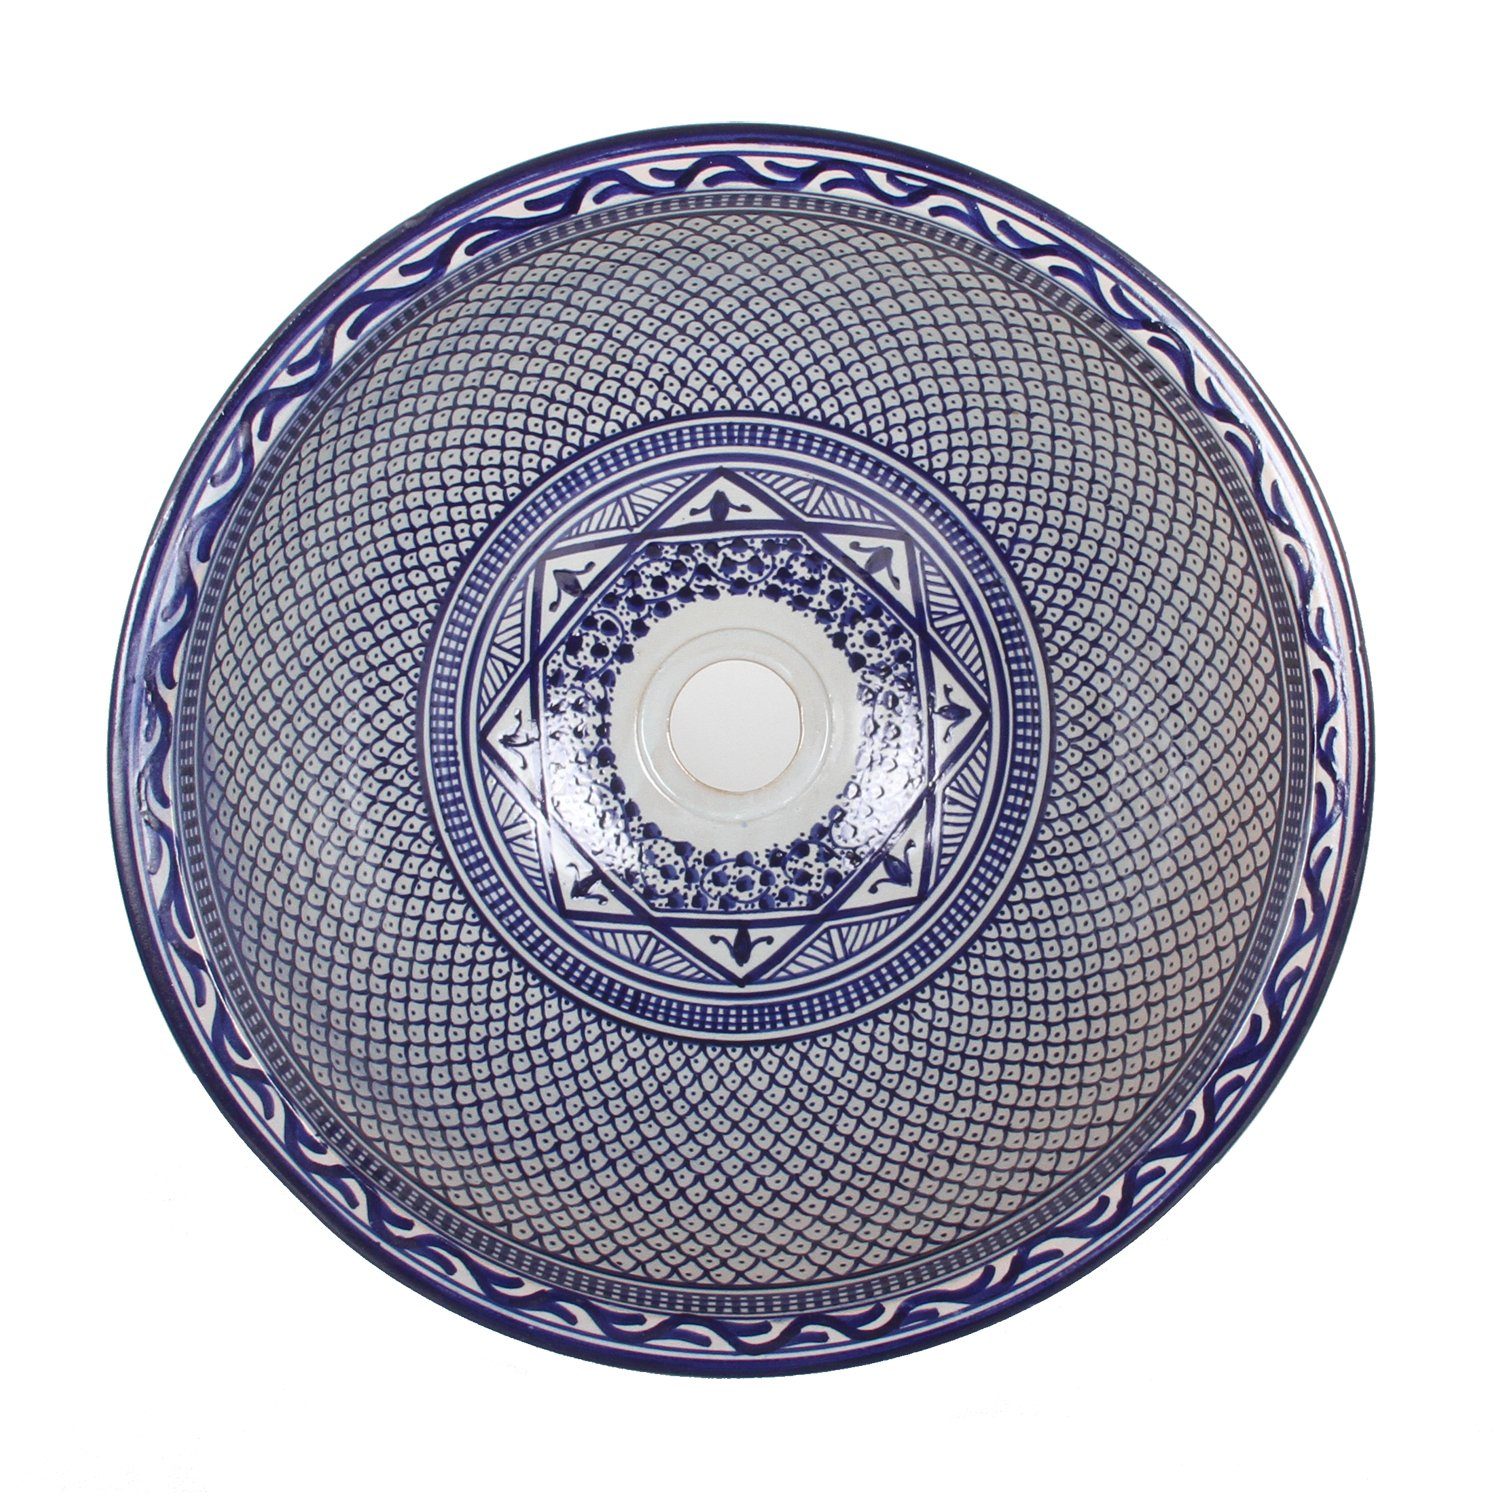 Casa Moro Waschbecken Orientalisches Keramik Waschbecken Fes106 Blau Ø 35cm Weiß rund (marokkanische Handwaschbecken, Aufsatzbecken handbemalt & handgefertigt), Kunsthandwerk aus Marokko WB35316